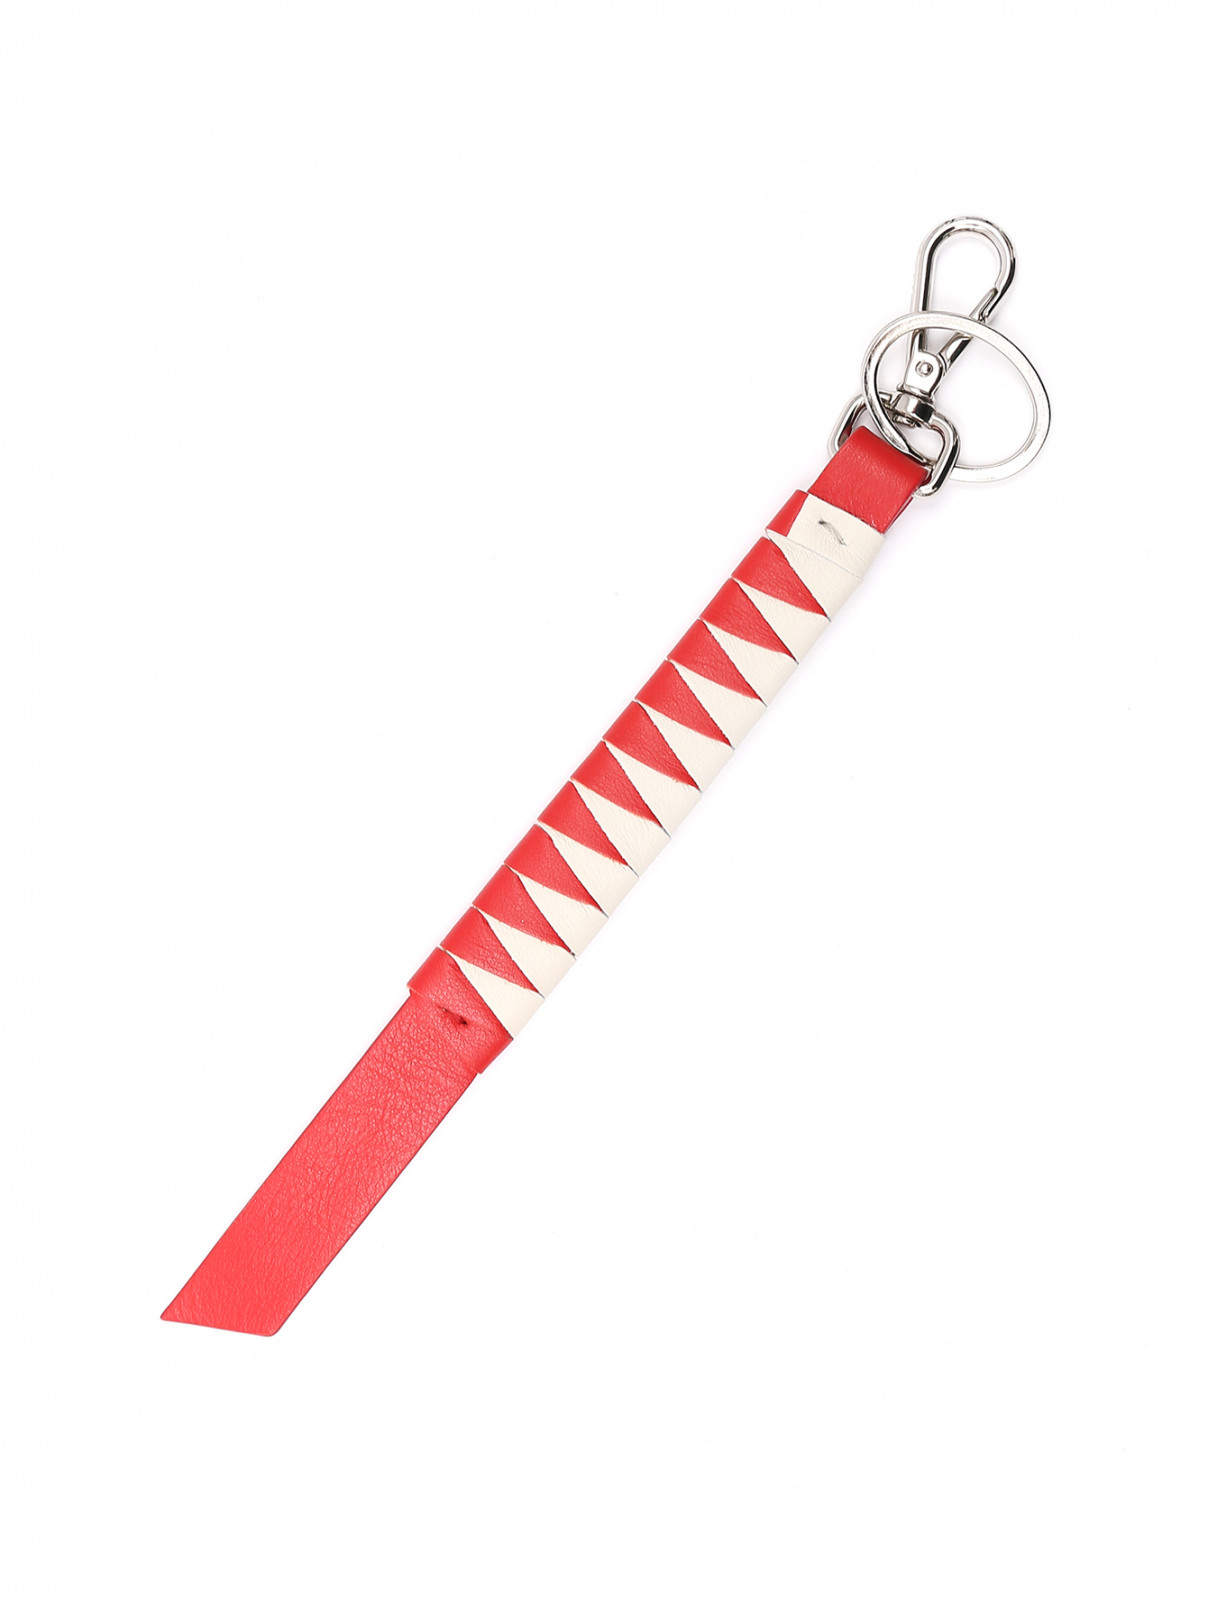 Ключница Malo  –  Общий вид  – Цвет:  Красный